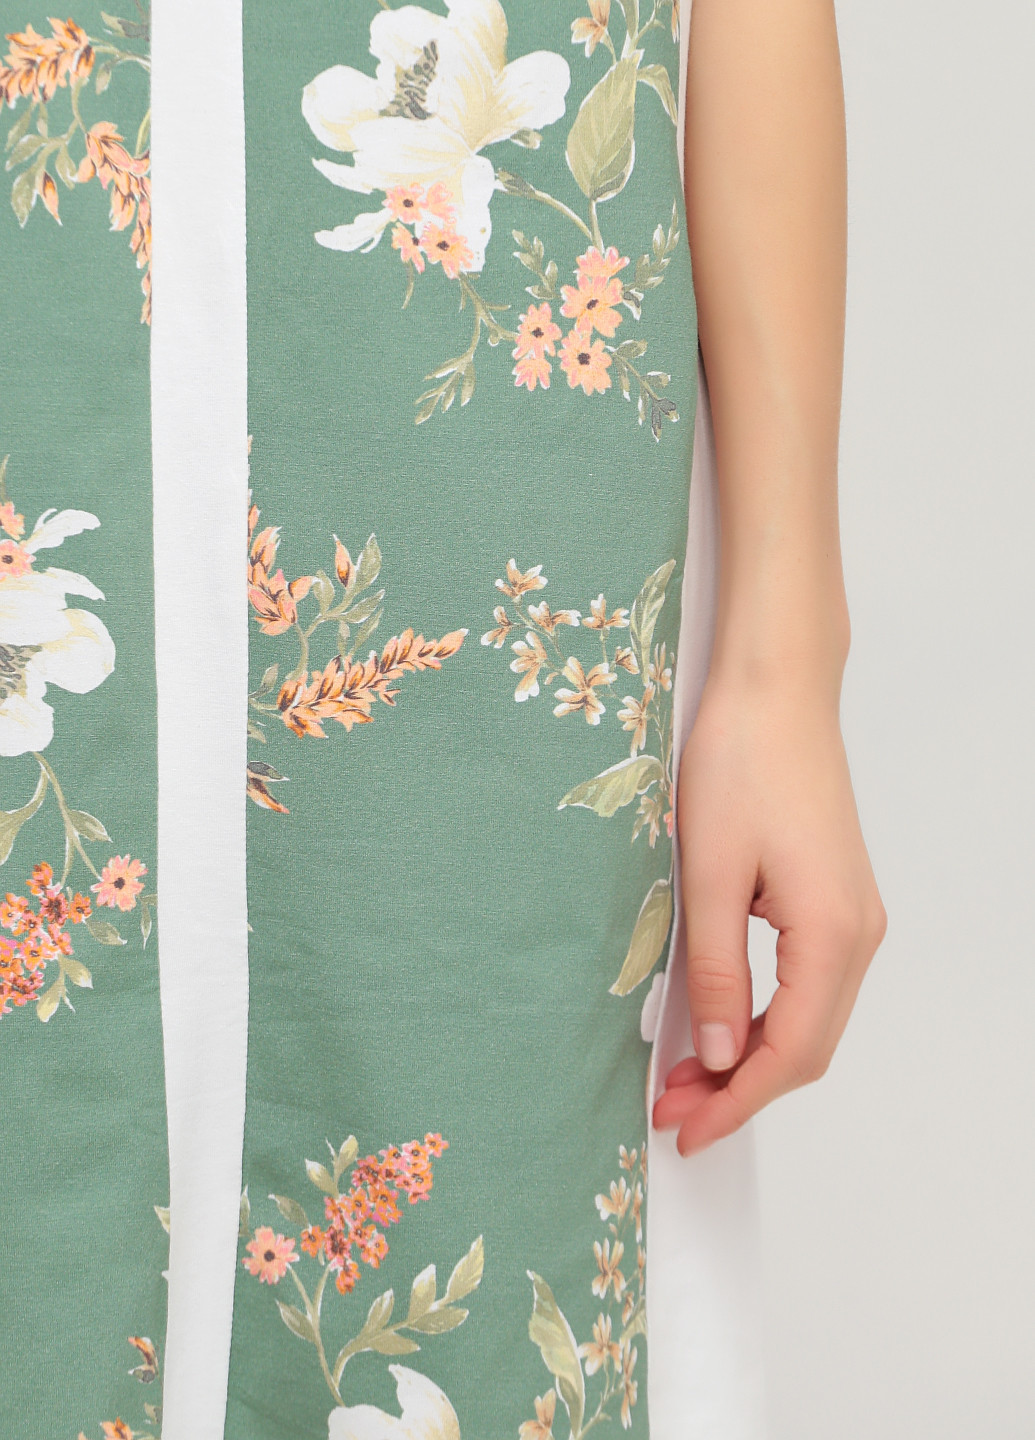 Салатовое домашнее платье платье-футболка Трикомир с цветочным принтом